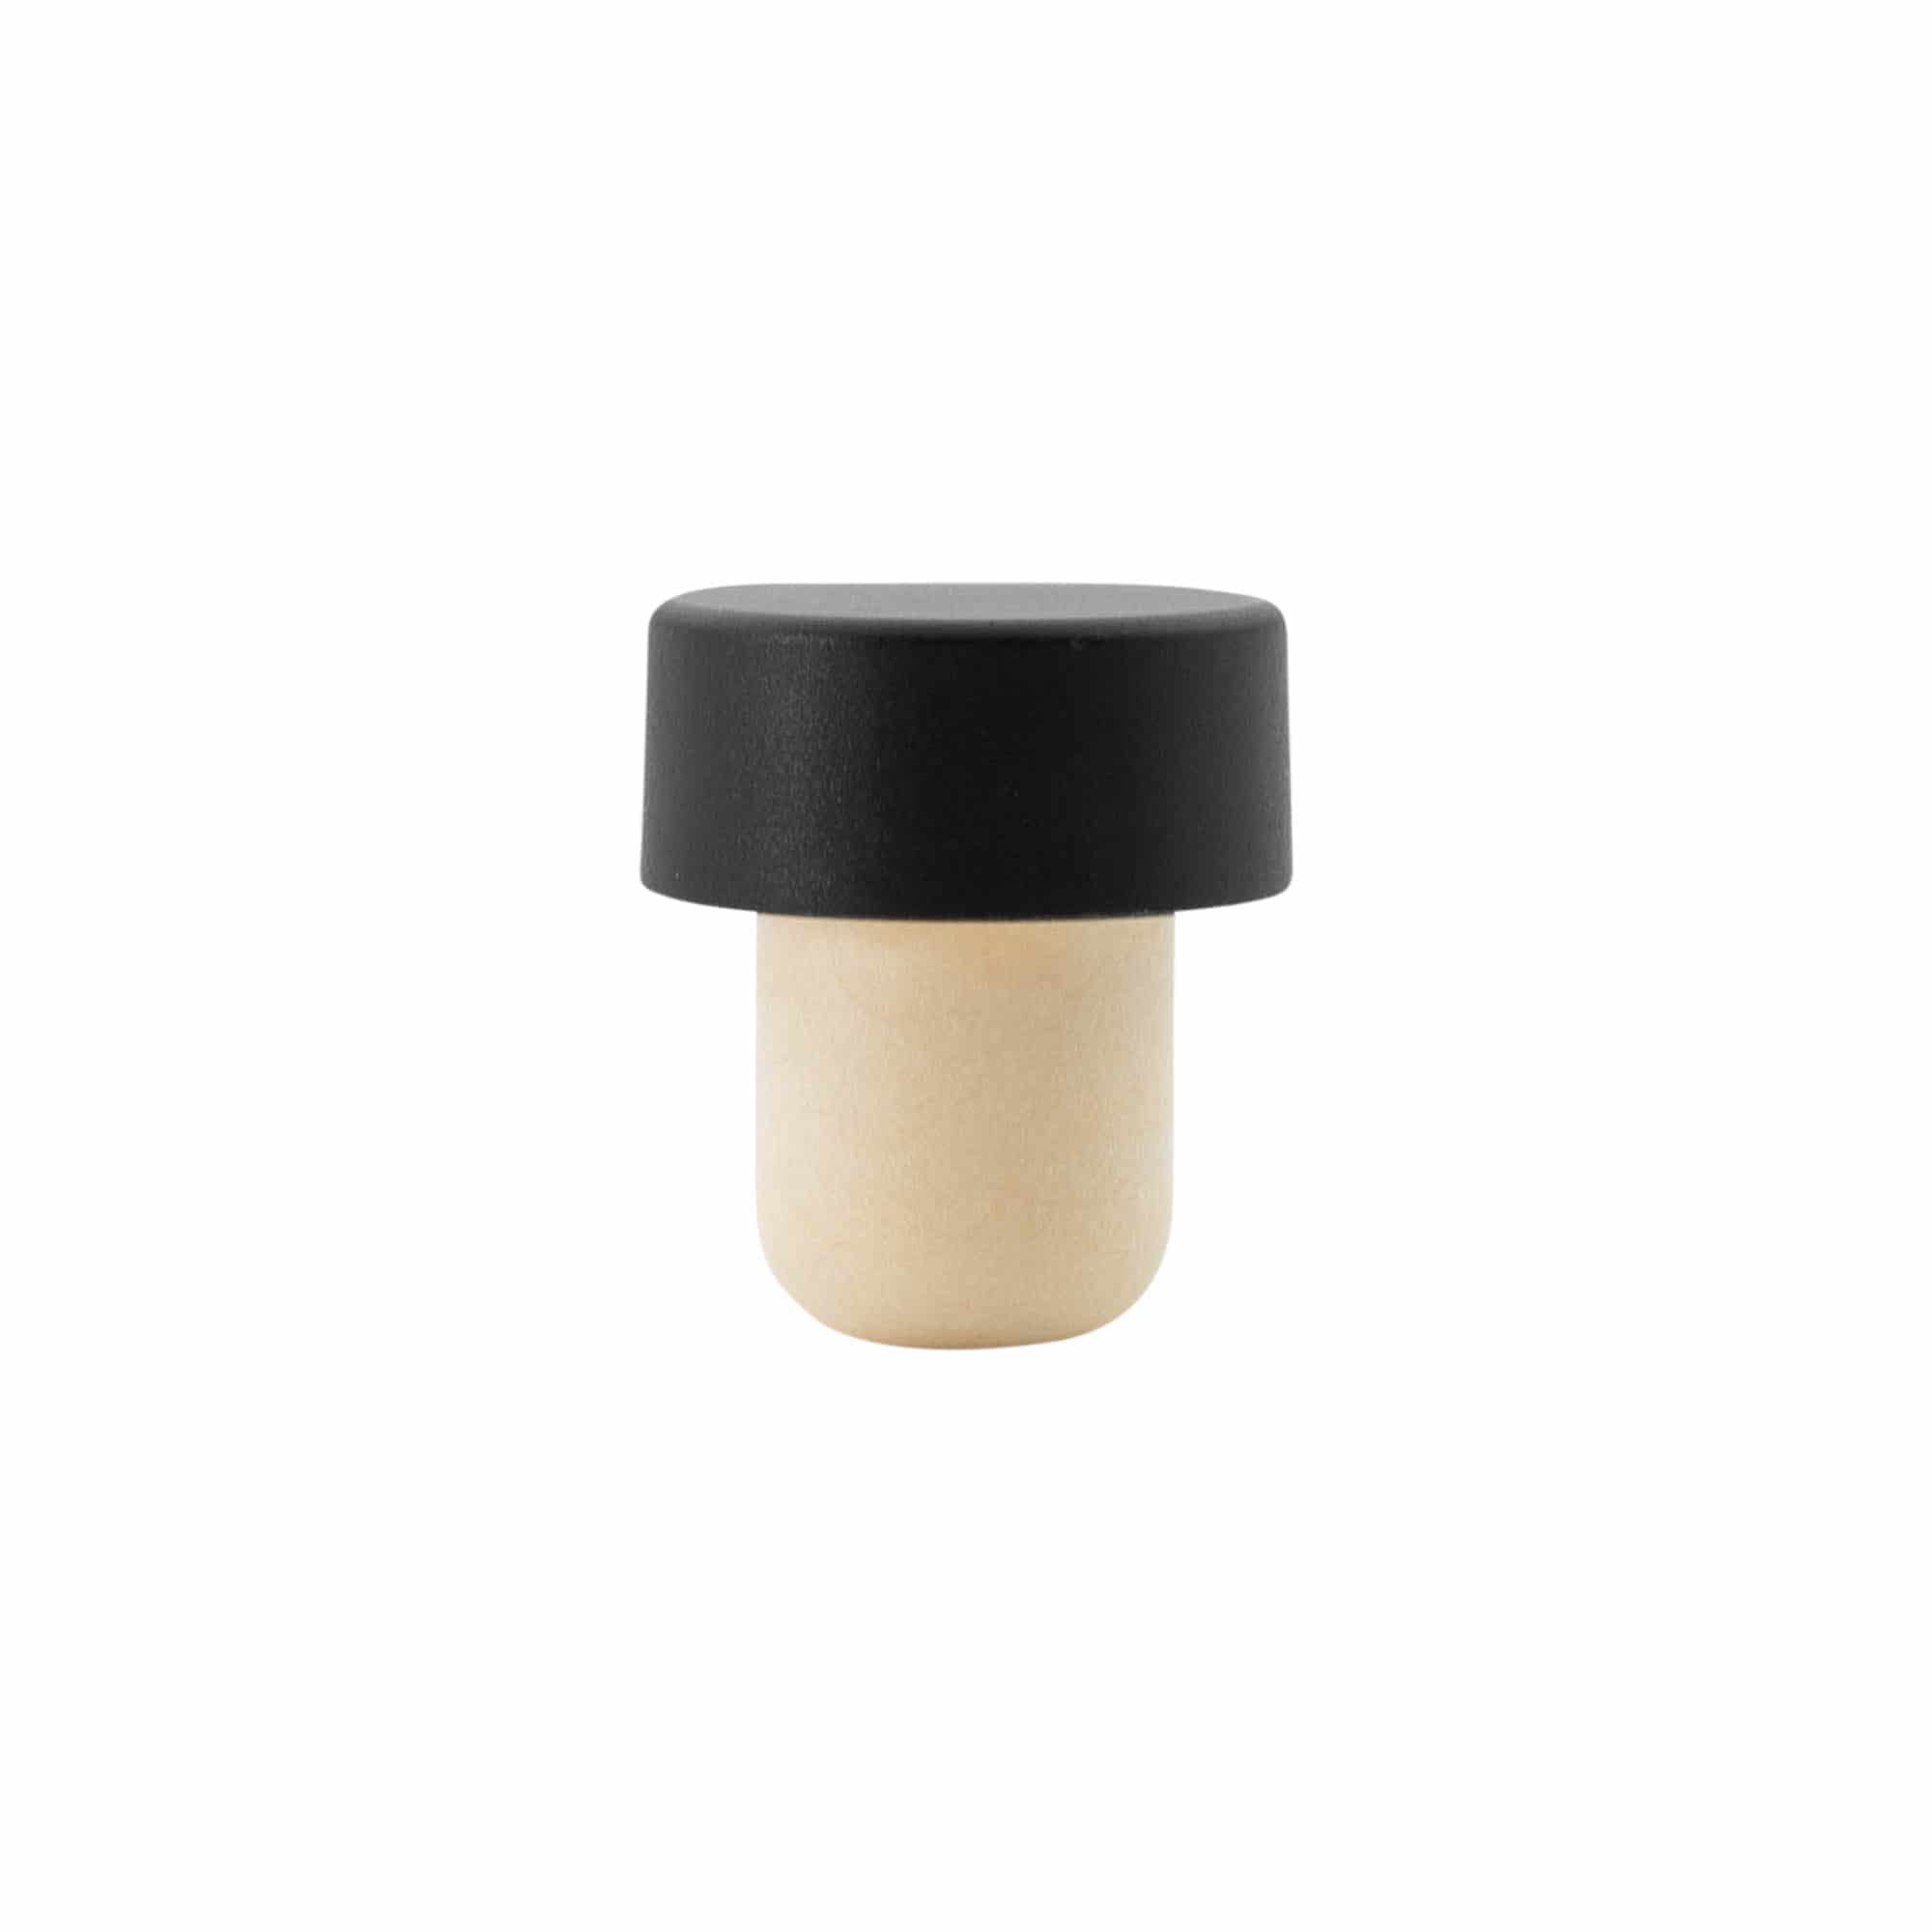 19 mm mushroom cork, plastic, black, for opening: cork